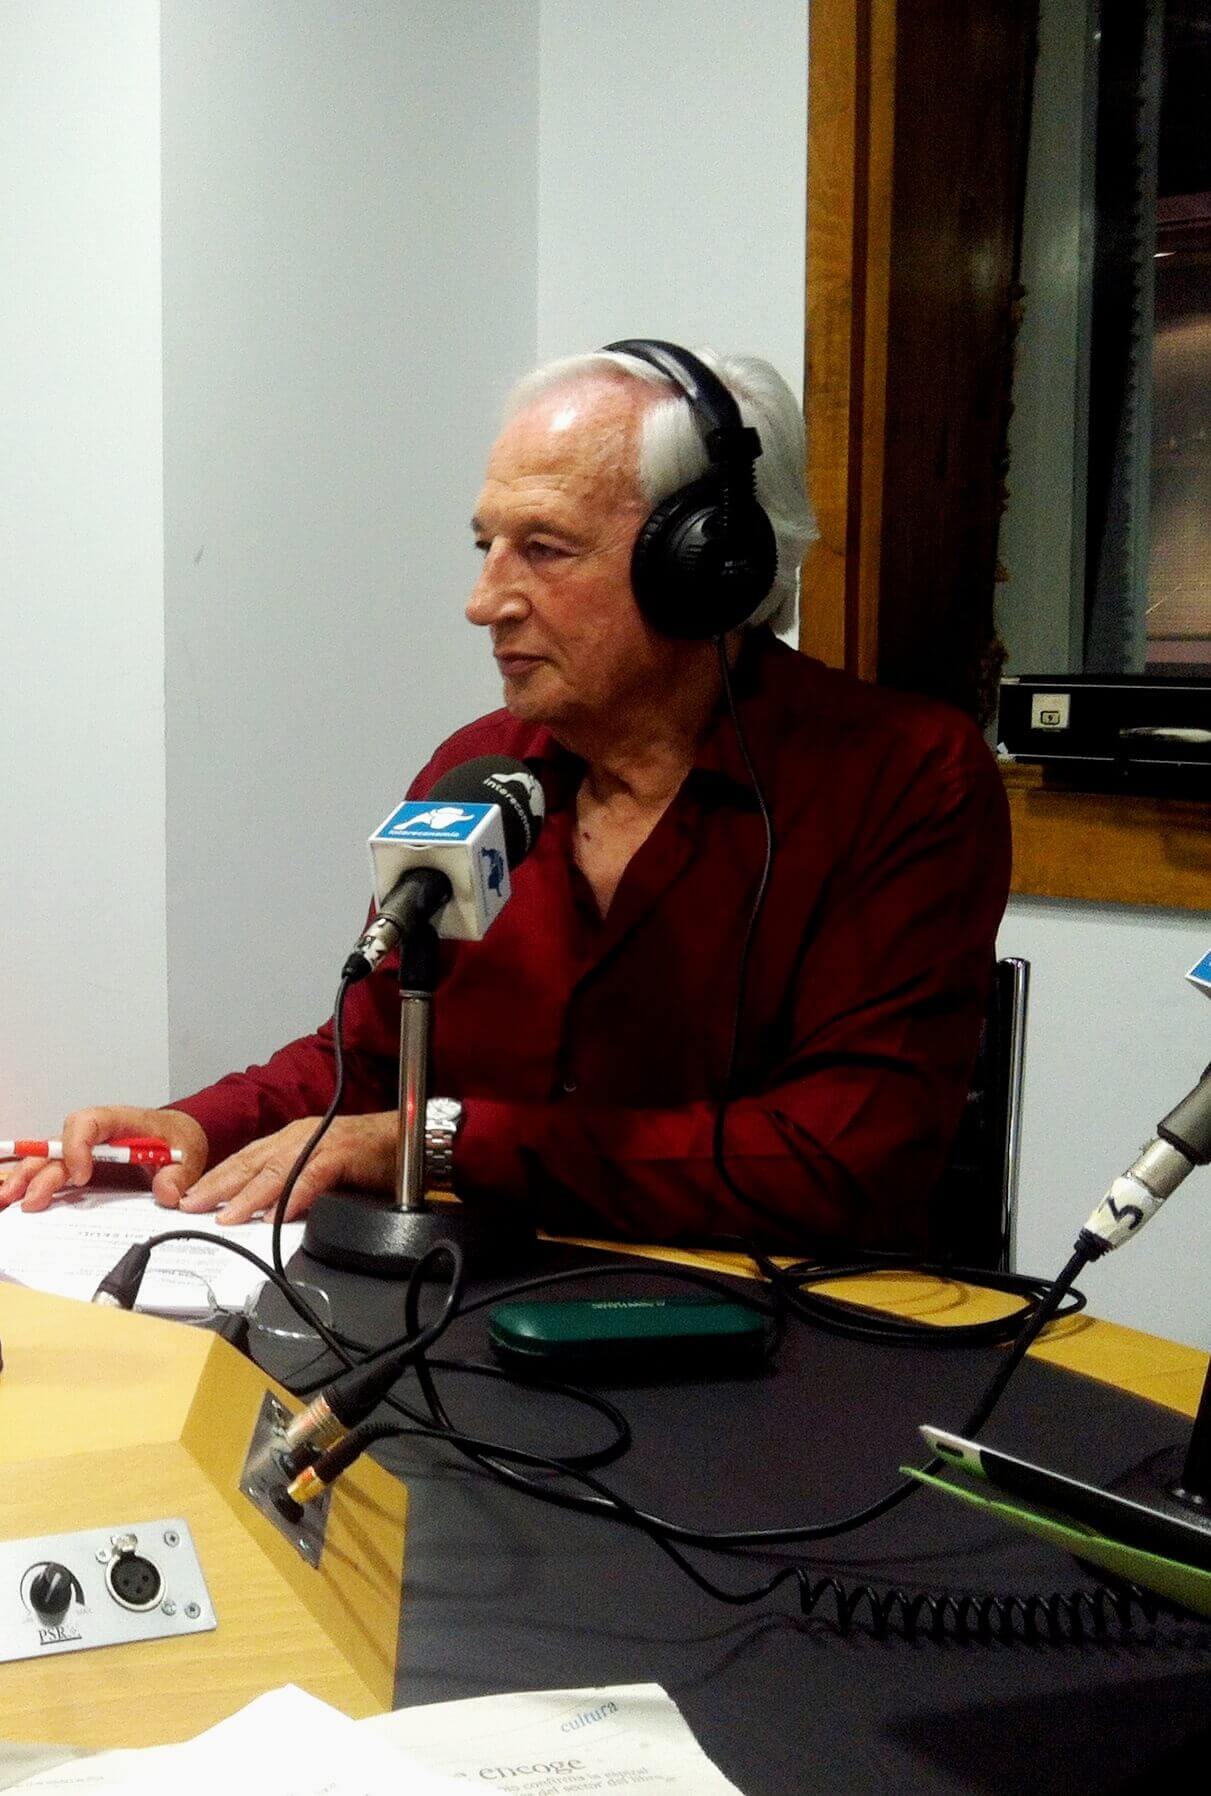 Carlos Cué presenta el programa 'Ecos de Actualidad' en Radio Inter